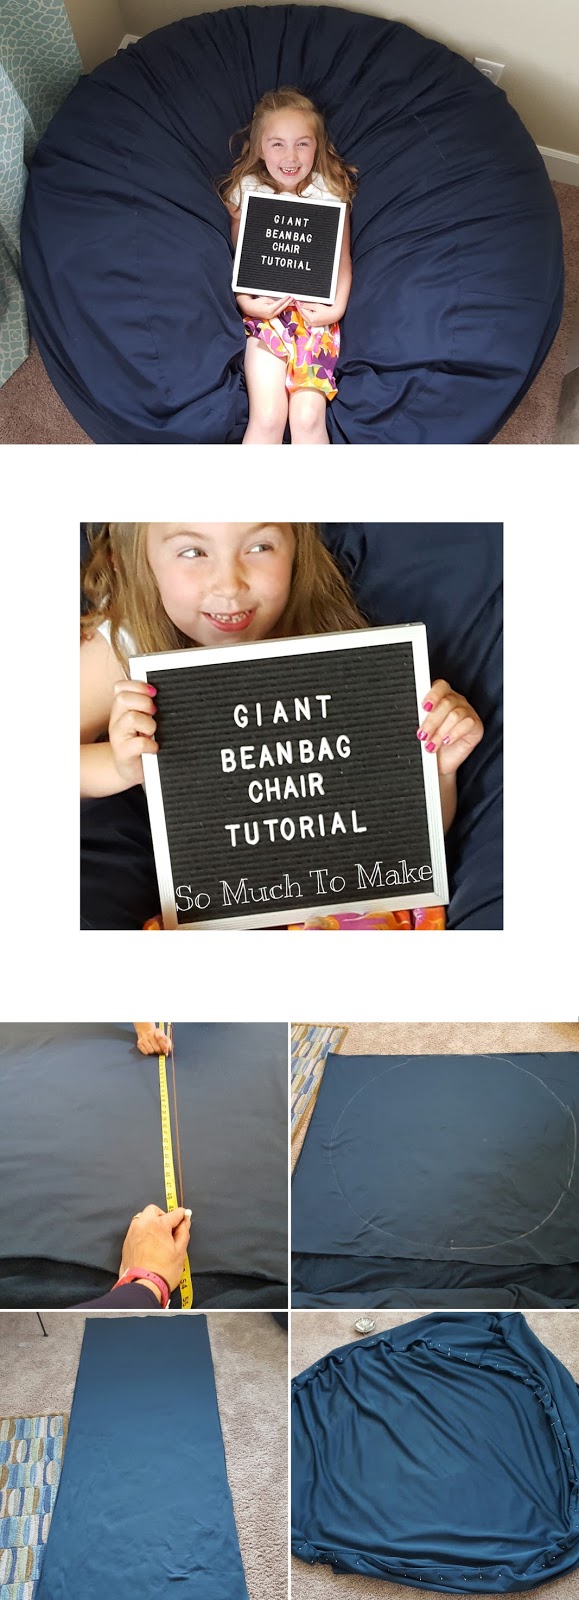 So Much To Make: Giant Bean Bag Chair Tutorial